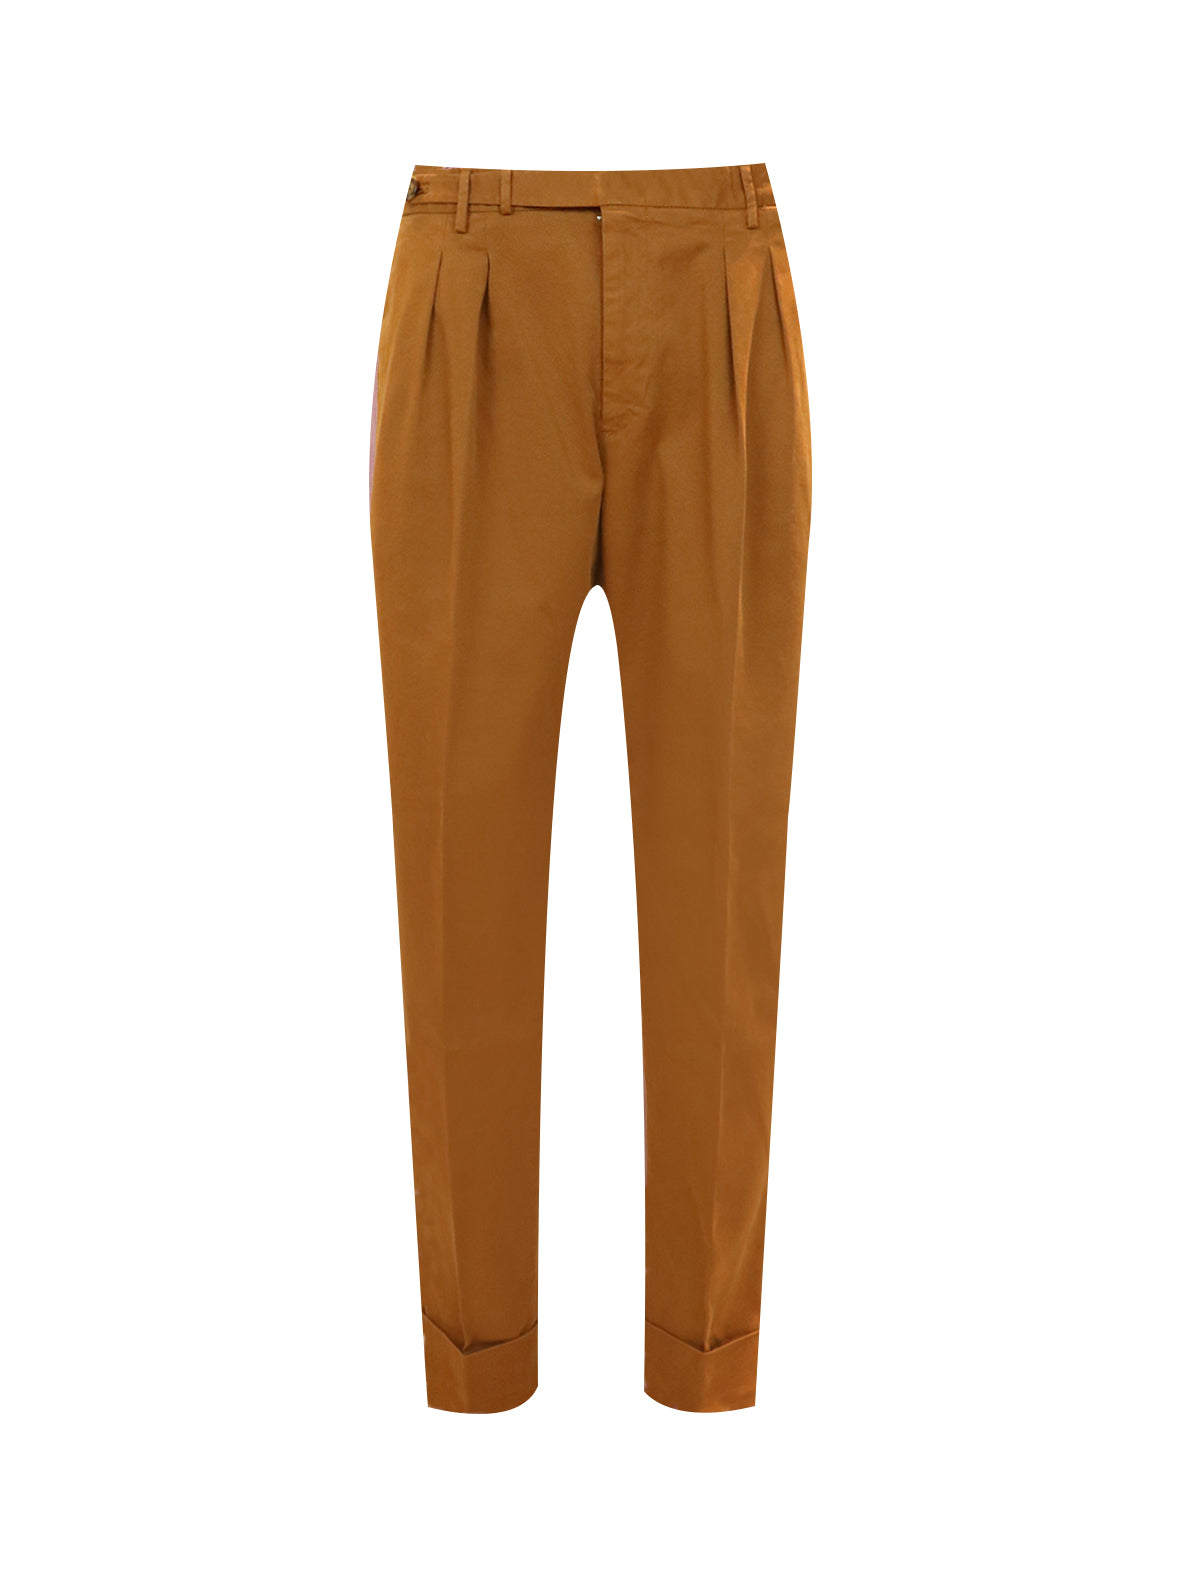 PT TORINO Reworked Trouser in Orange-Brown